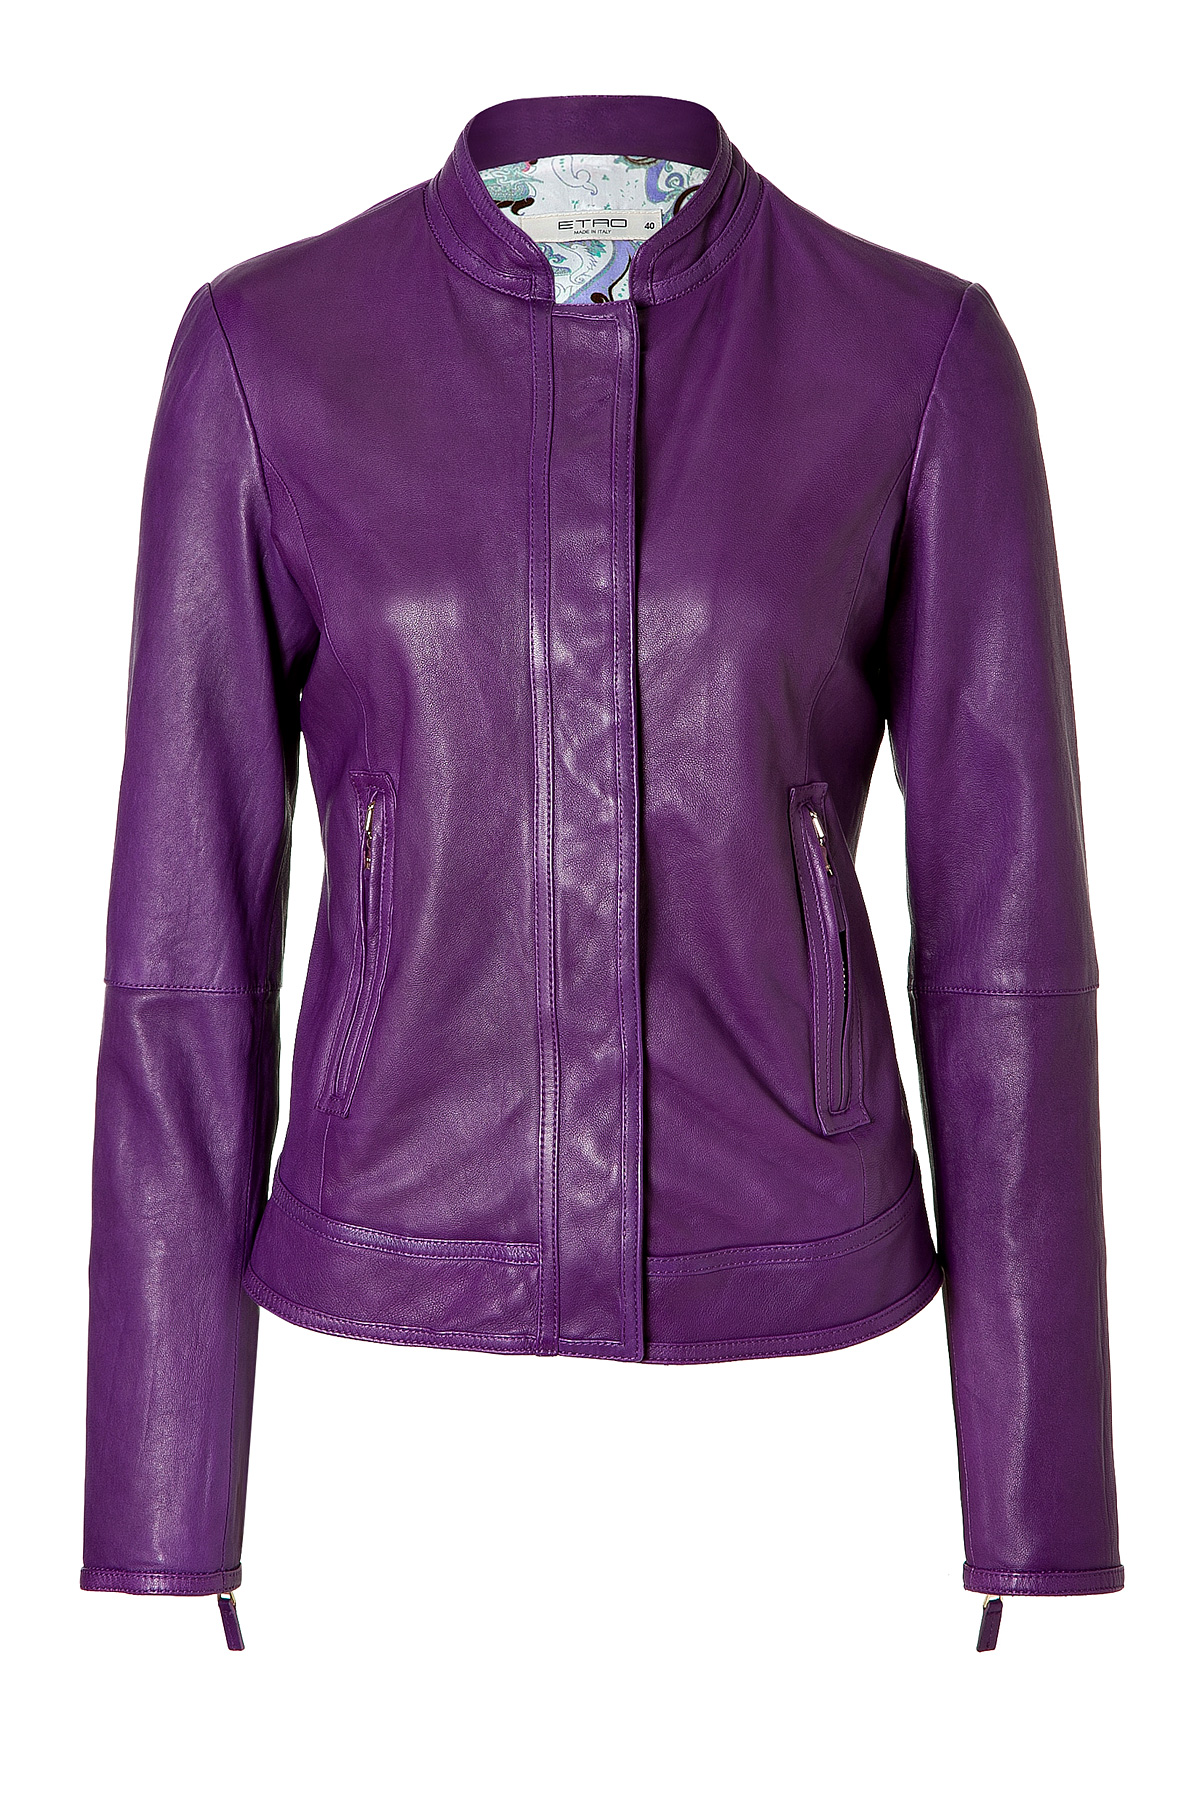 Lyst - Etro Purple Leather Jacket in Purple